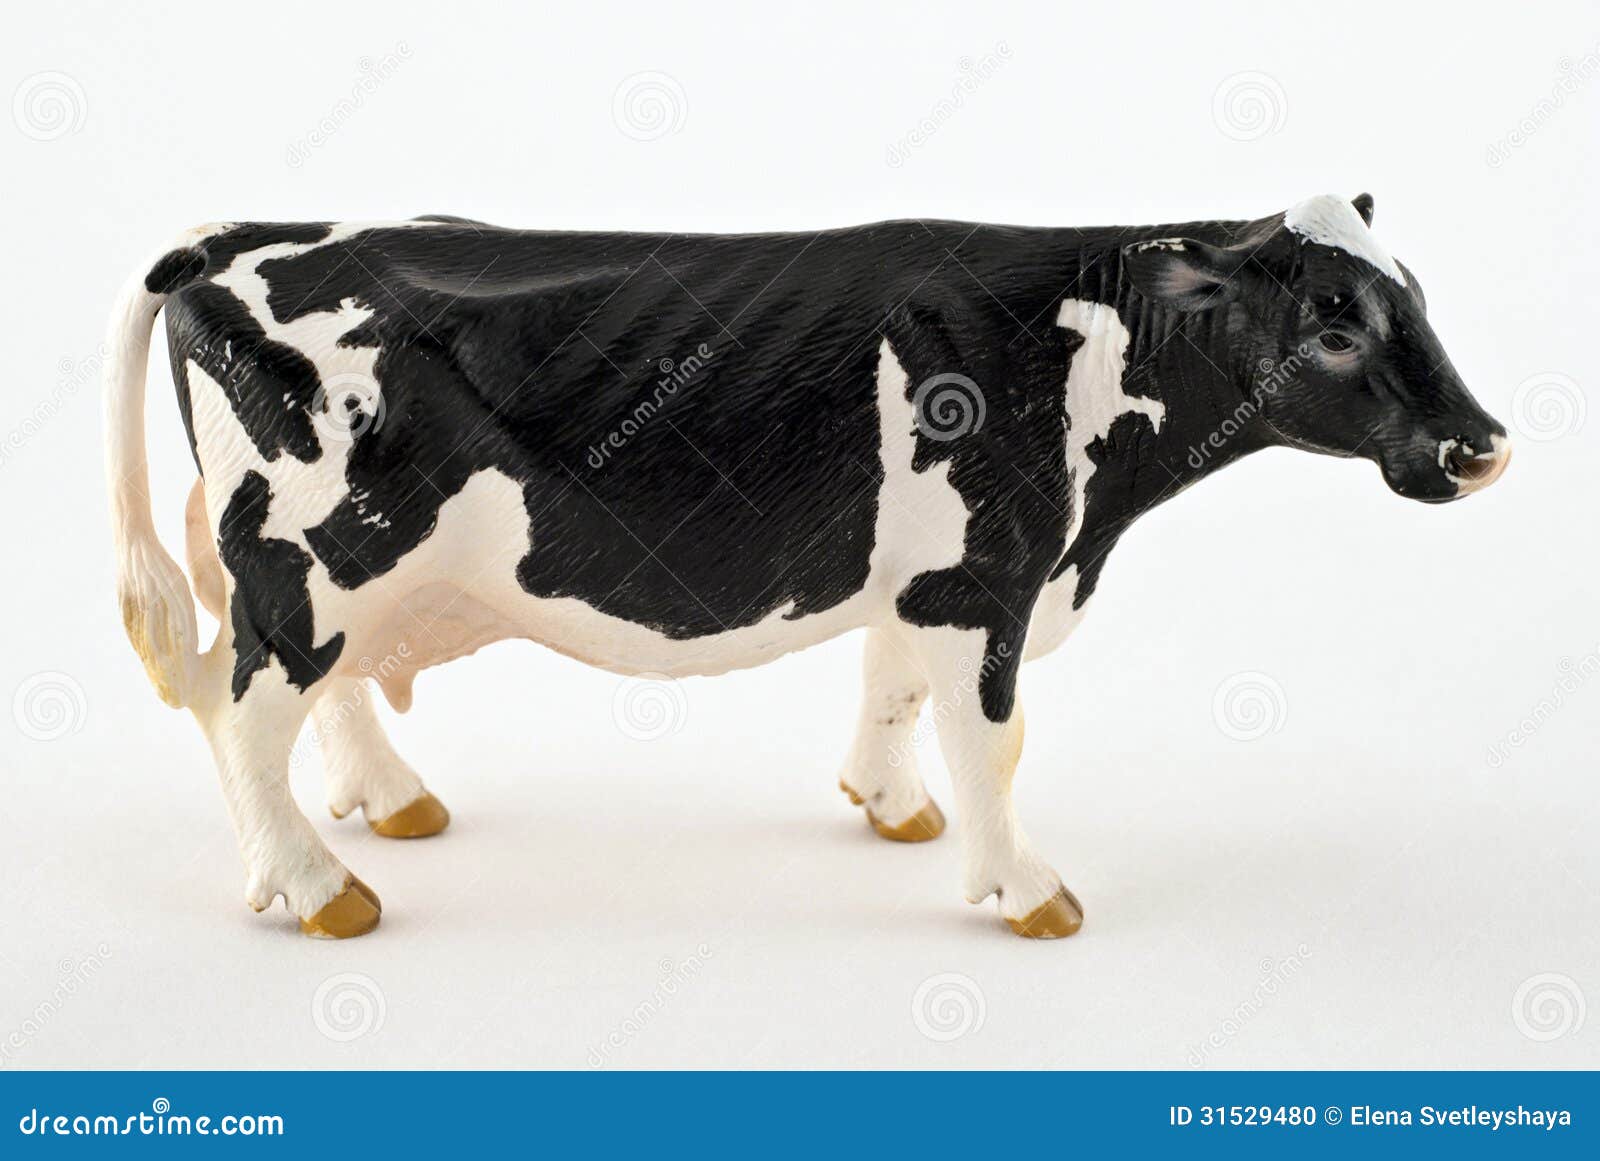 Vache à jouet photo stock. Image du coupure, plastique - 31529480